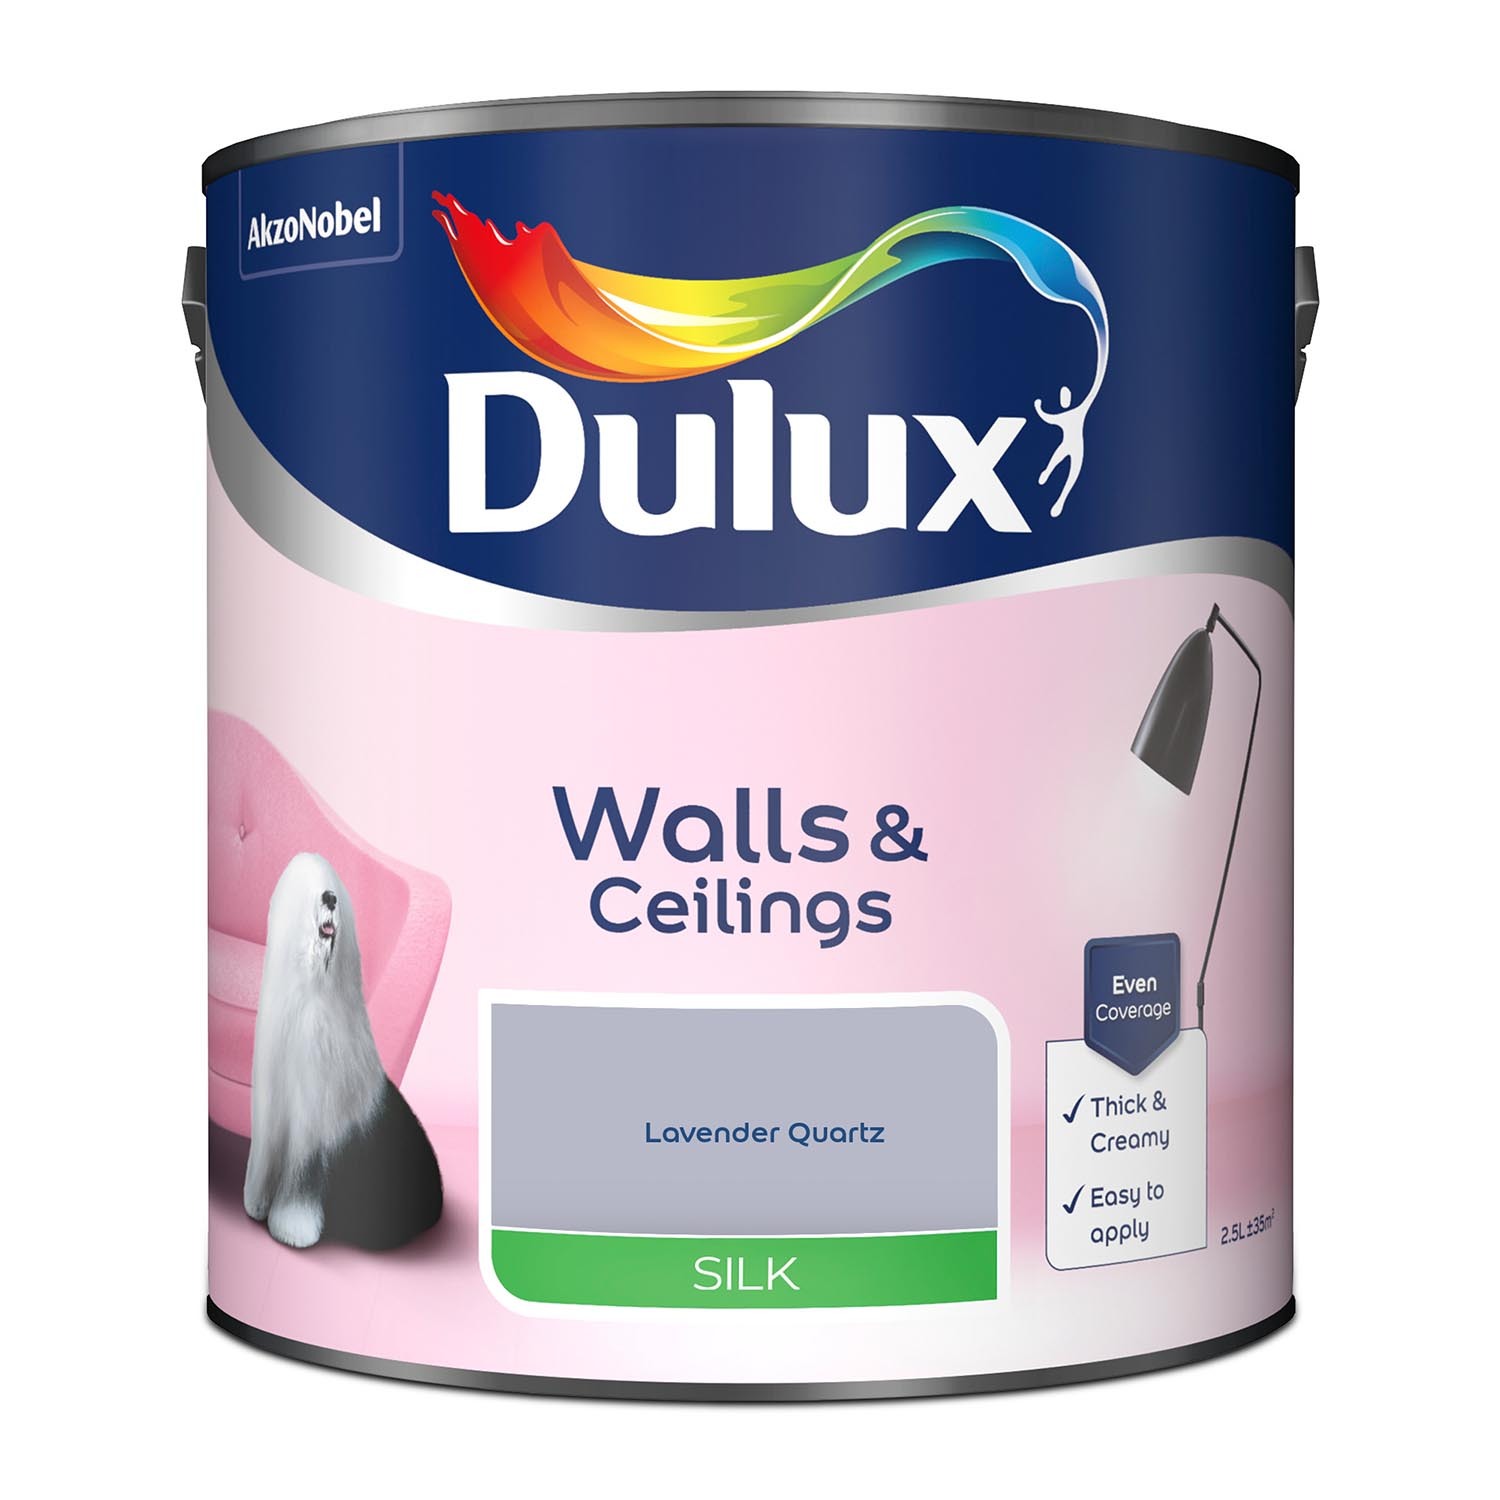 Dulux Walls & Ceilings Lavender Quartz Silk Emulsion Paint 2.5L Image 2